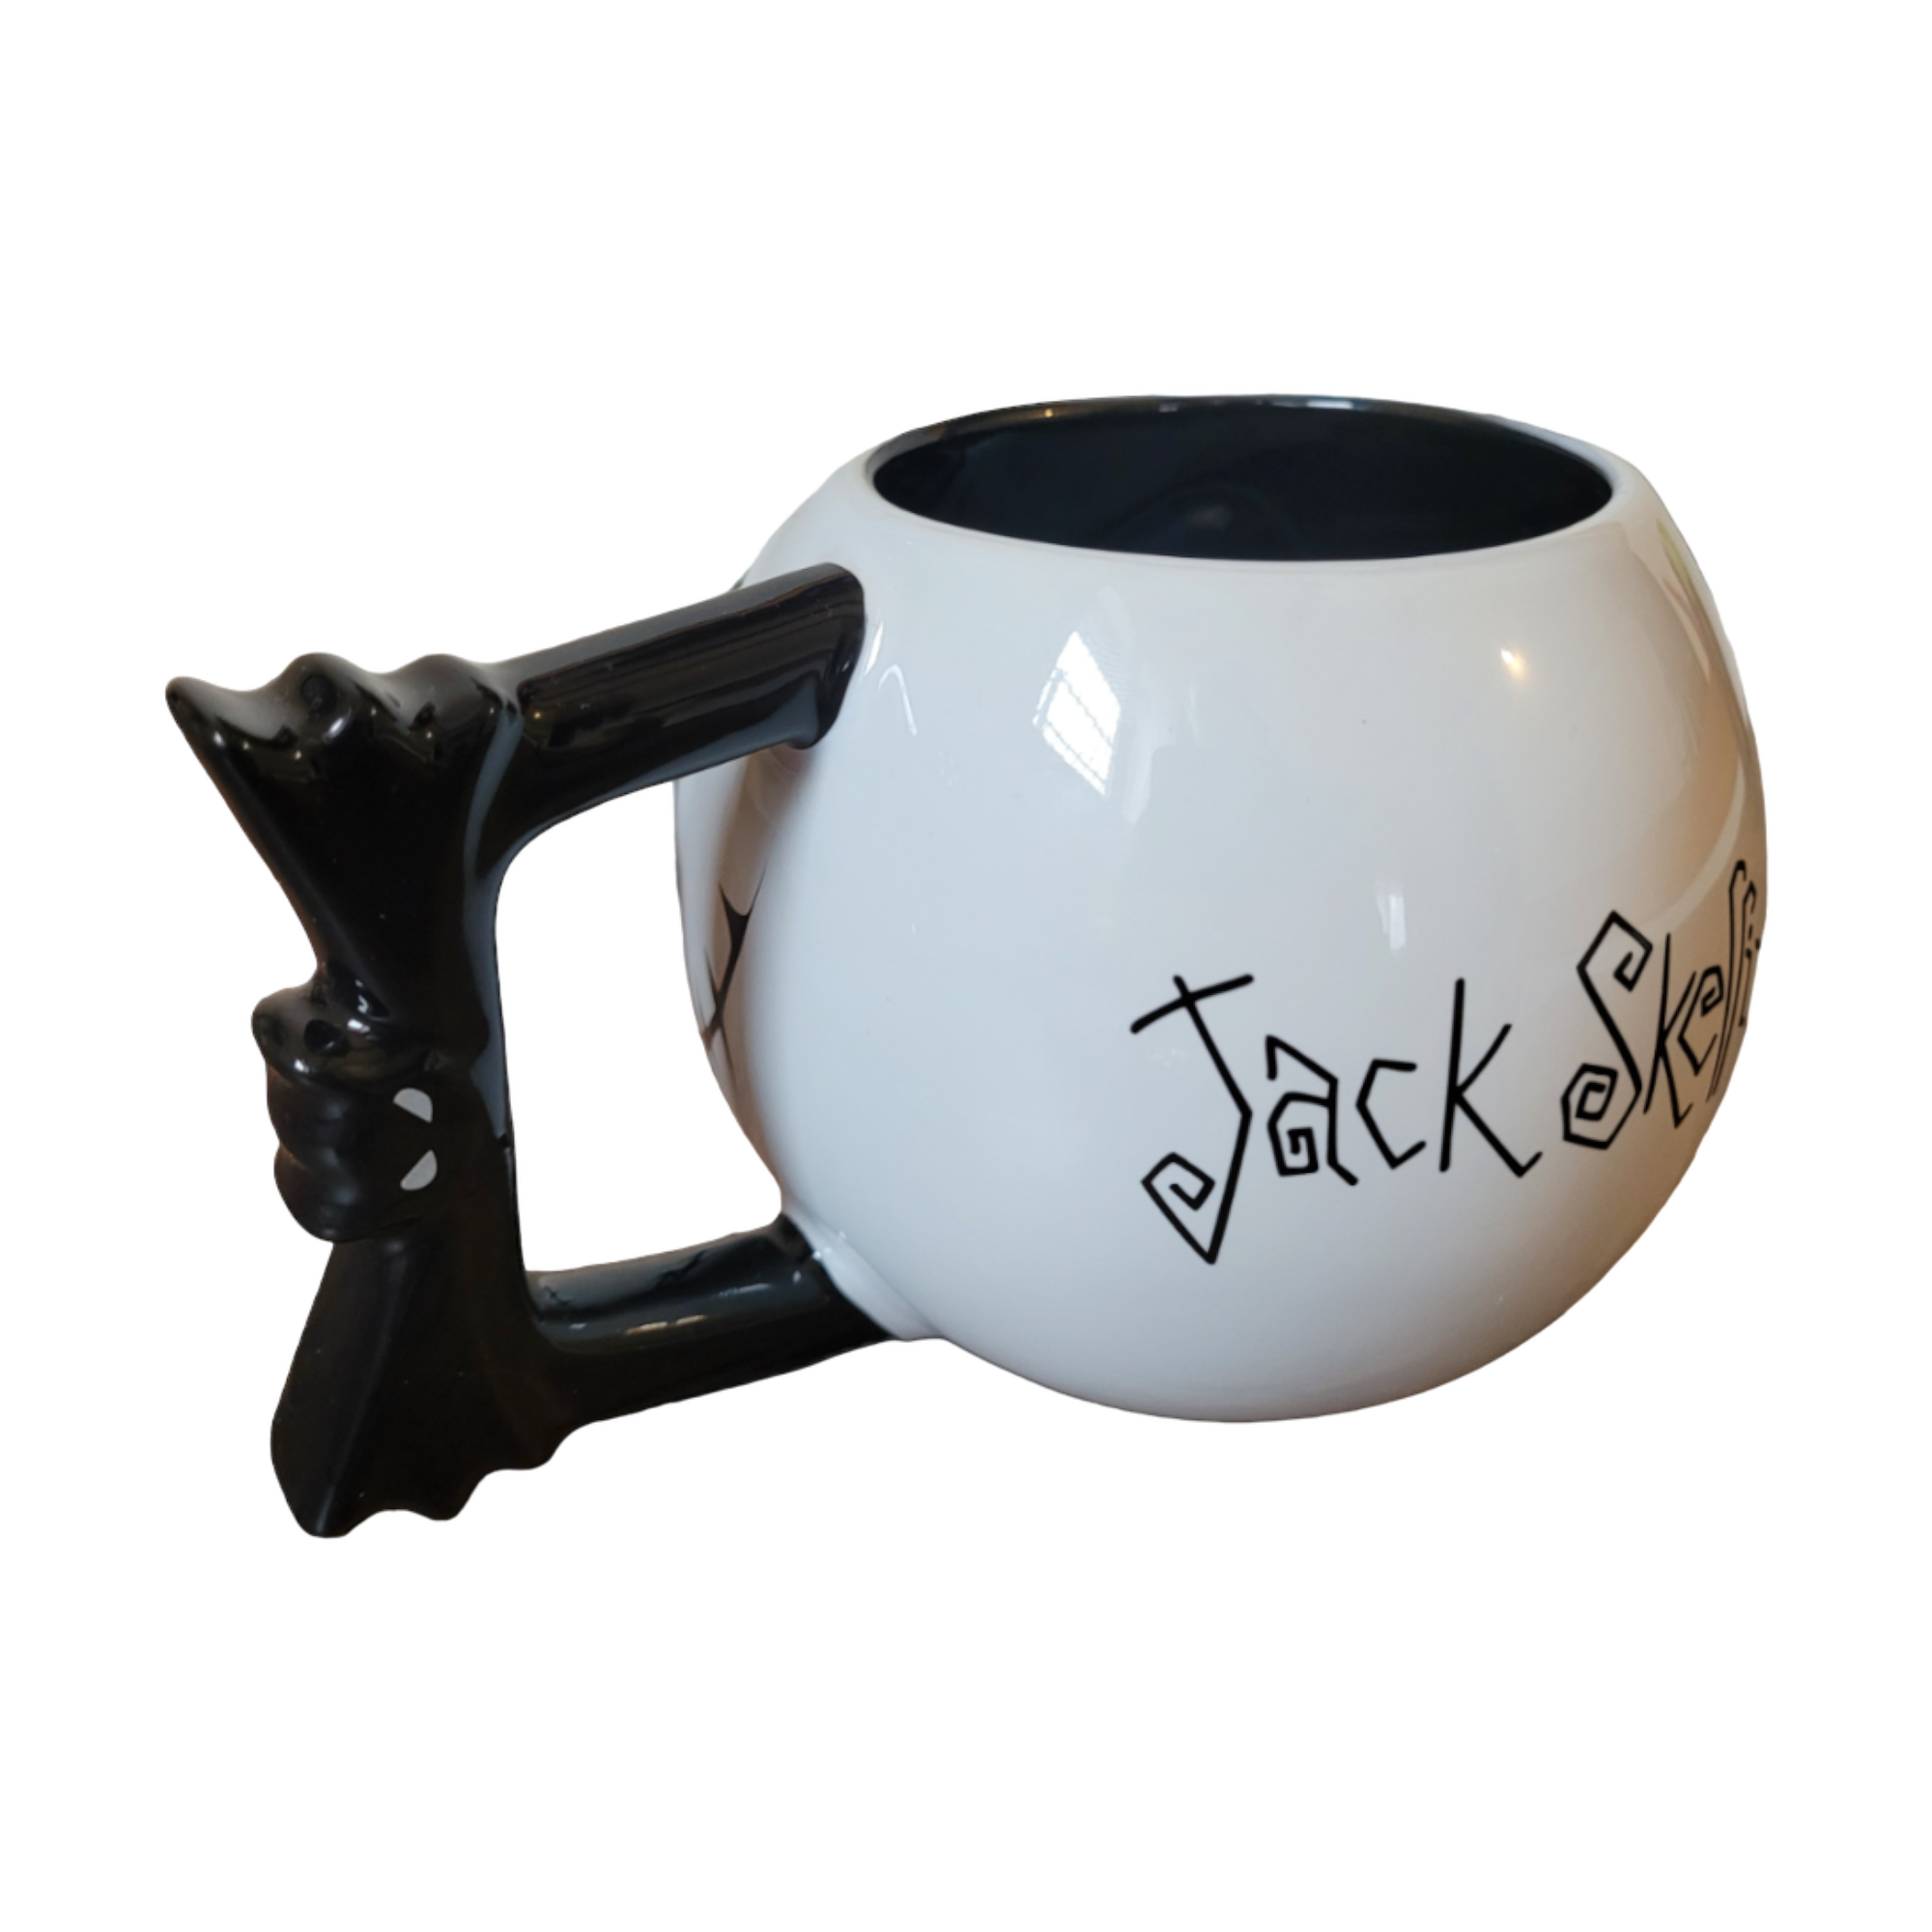 Disney - Létrange Noël de Monsieur Jack : Mug Jack - le palais des goodies